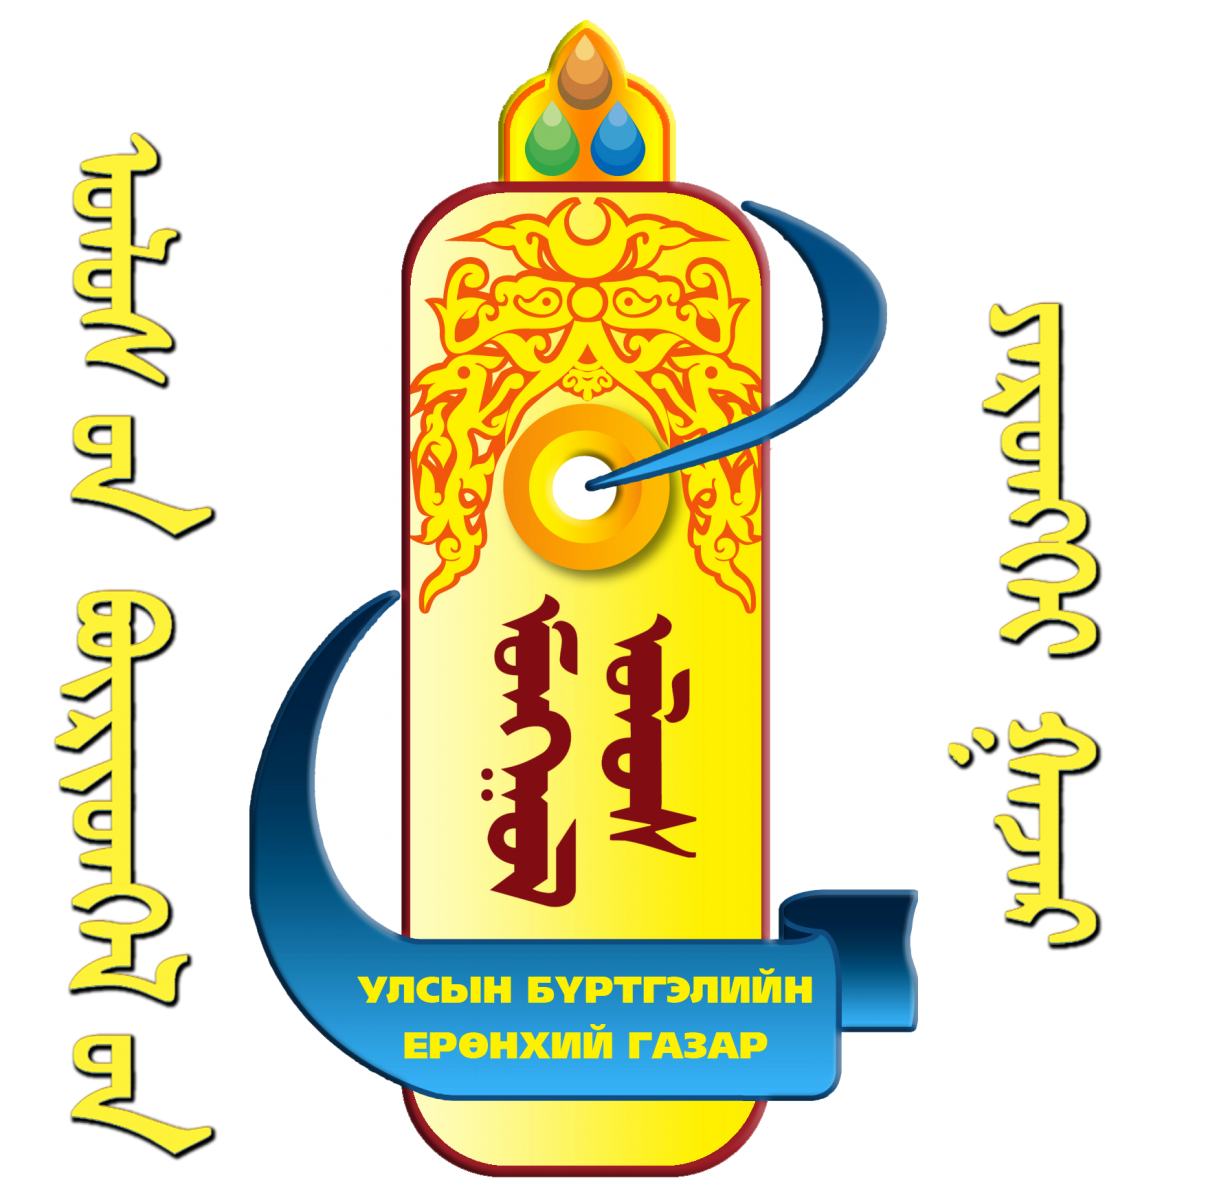 Сүхбаатар аймгийн улсын бүртгэлийн хэлтэс